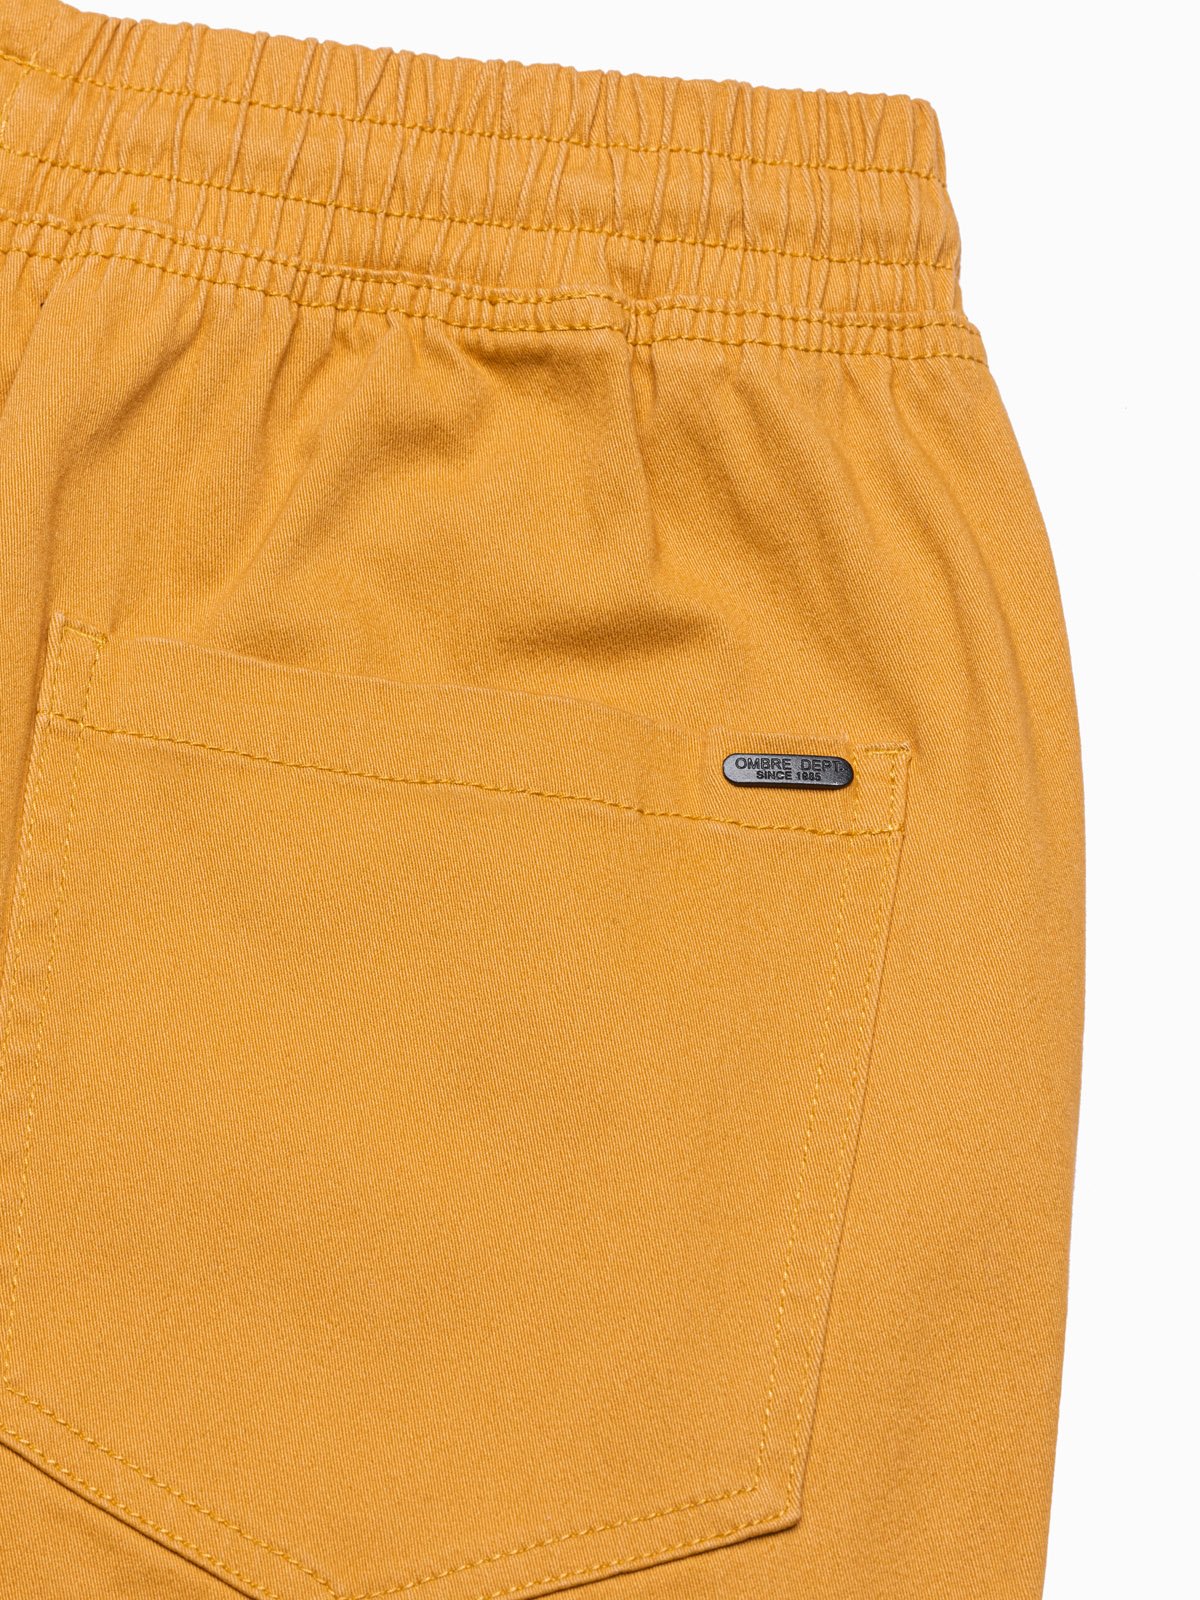 Men's pants joggers - blue P886  MODONE wholesale - Clothing For Men